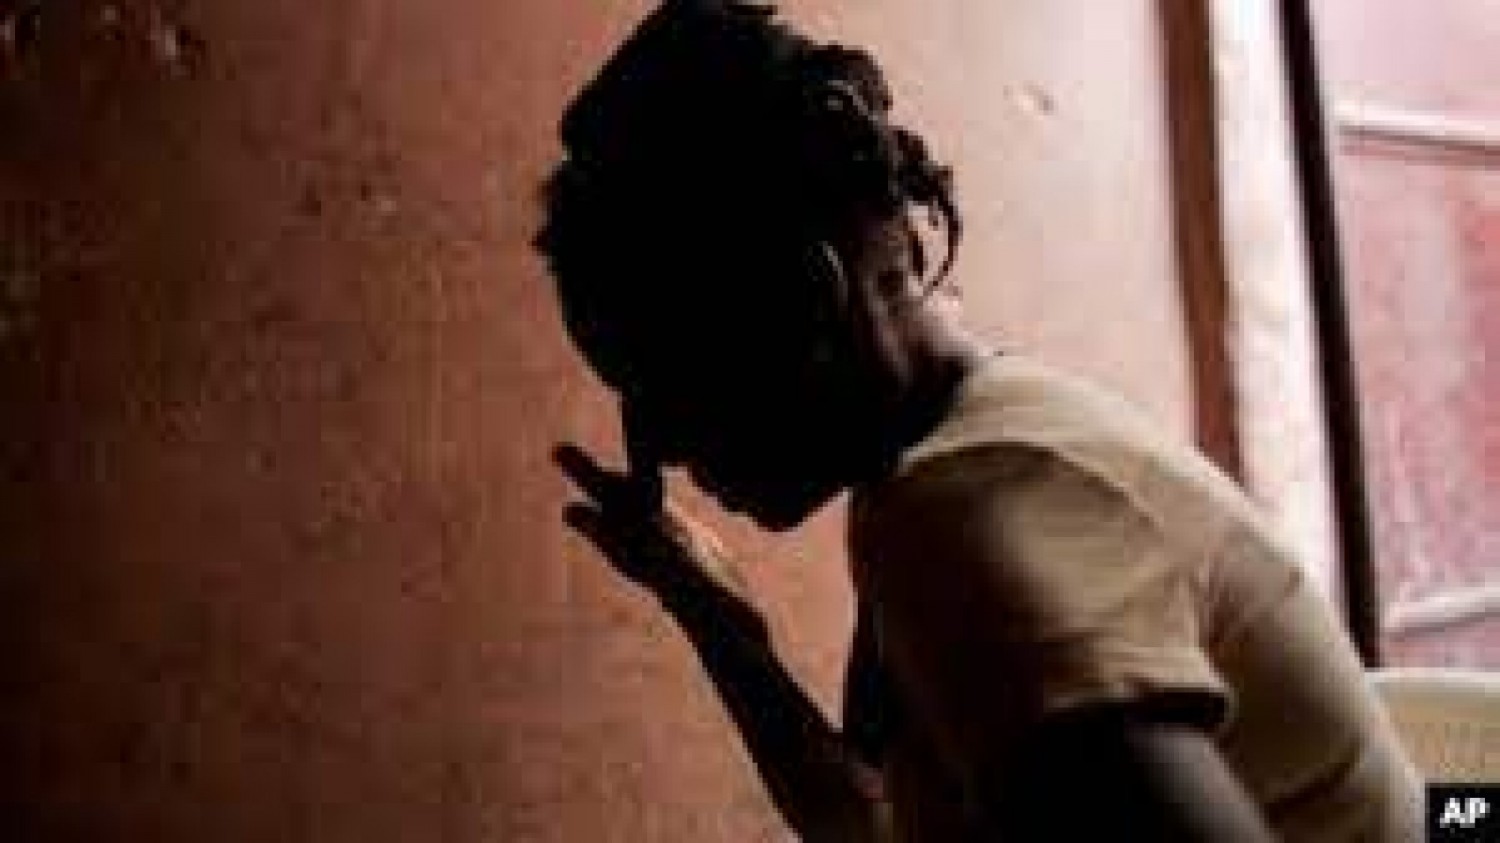 Côte d'Ivoire : Bondoukou, affaire d'une fille de 13 ans violée par son père instituteur, le mise en cause réfute les faits, mais interpellé et gardé à vue